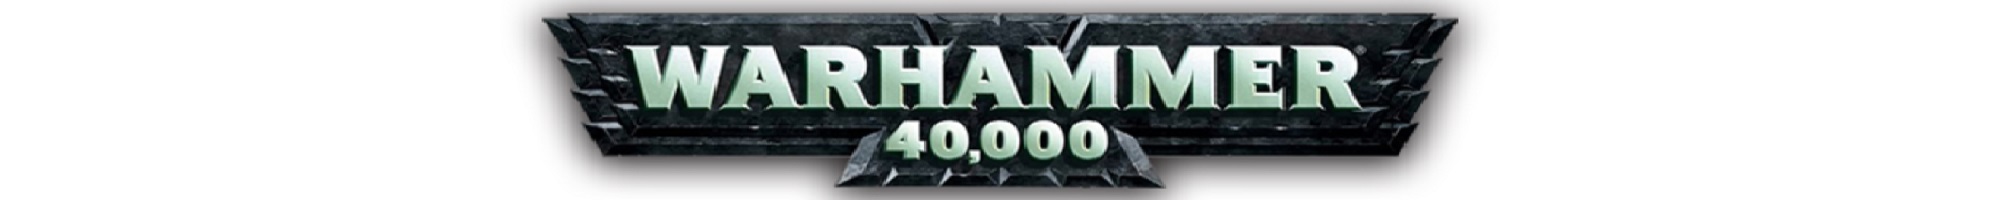 Warhammer 40,00 banner